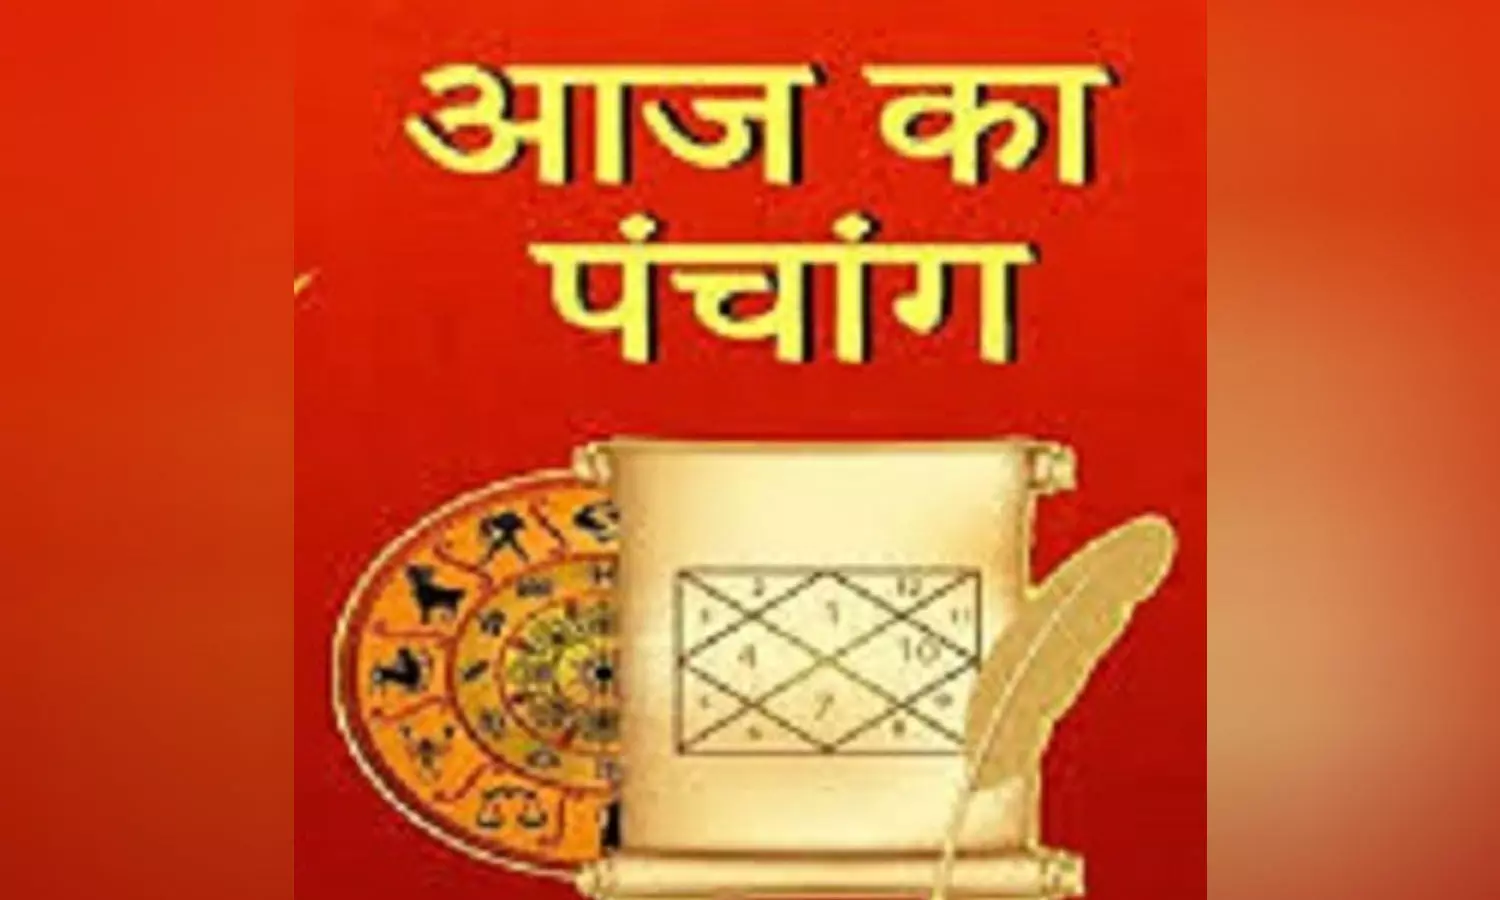 17 August 2022 Ka Panchang Tithi in Hindi : आज कौन सी तिथि और  व्रत है, जानने के लिए देखिए आज का पंचांग